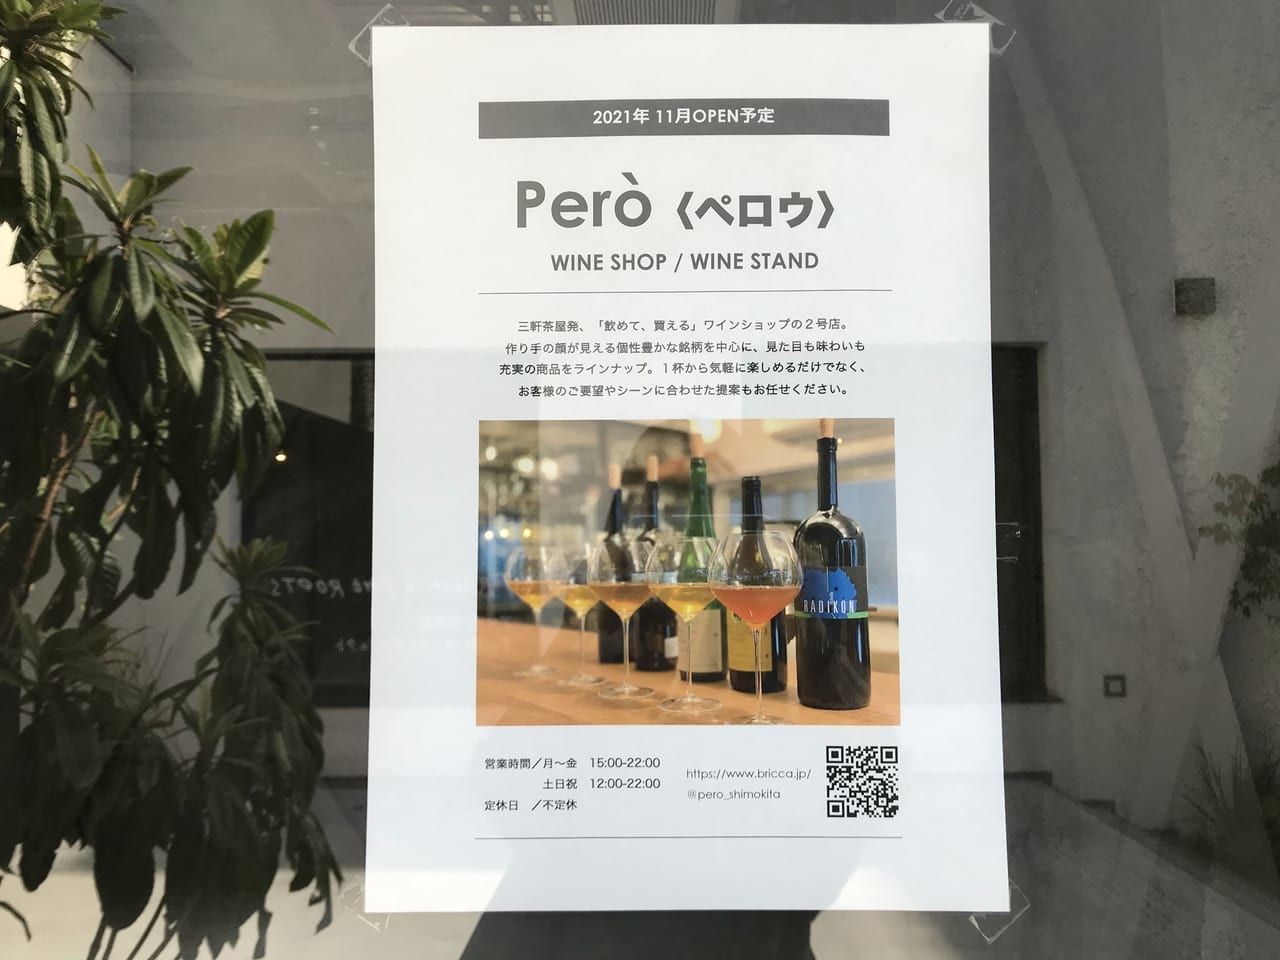 世田谷区下北沢reloadに新しく三軒茶屋pero(ペロウ）のワインショップが2021年11月オープン予定